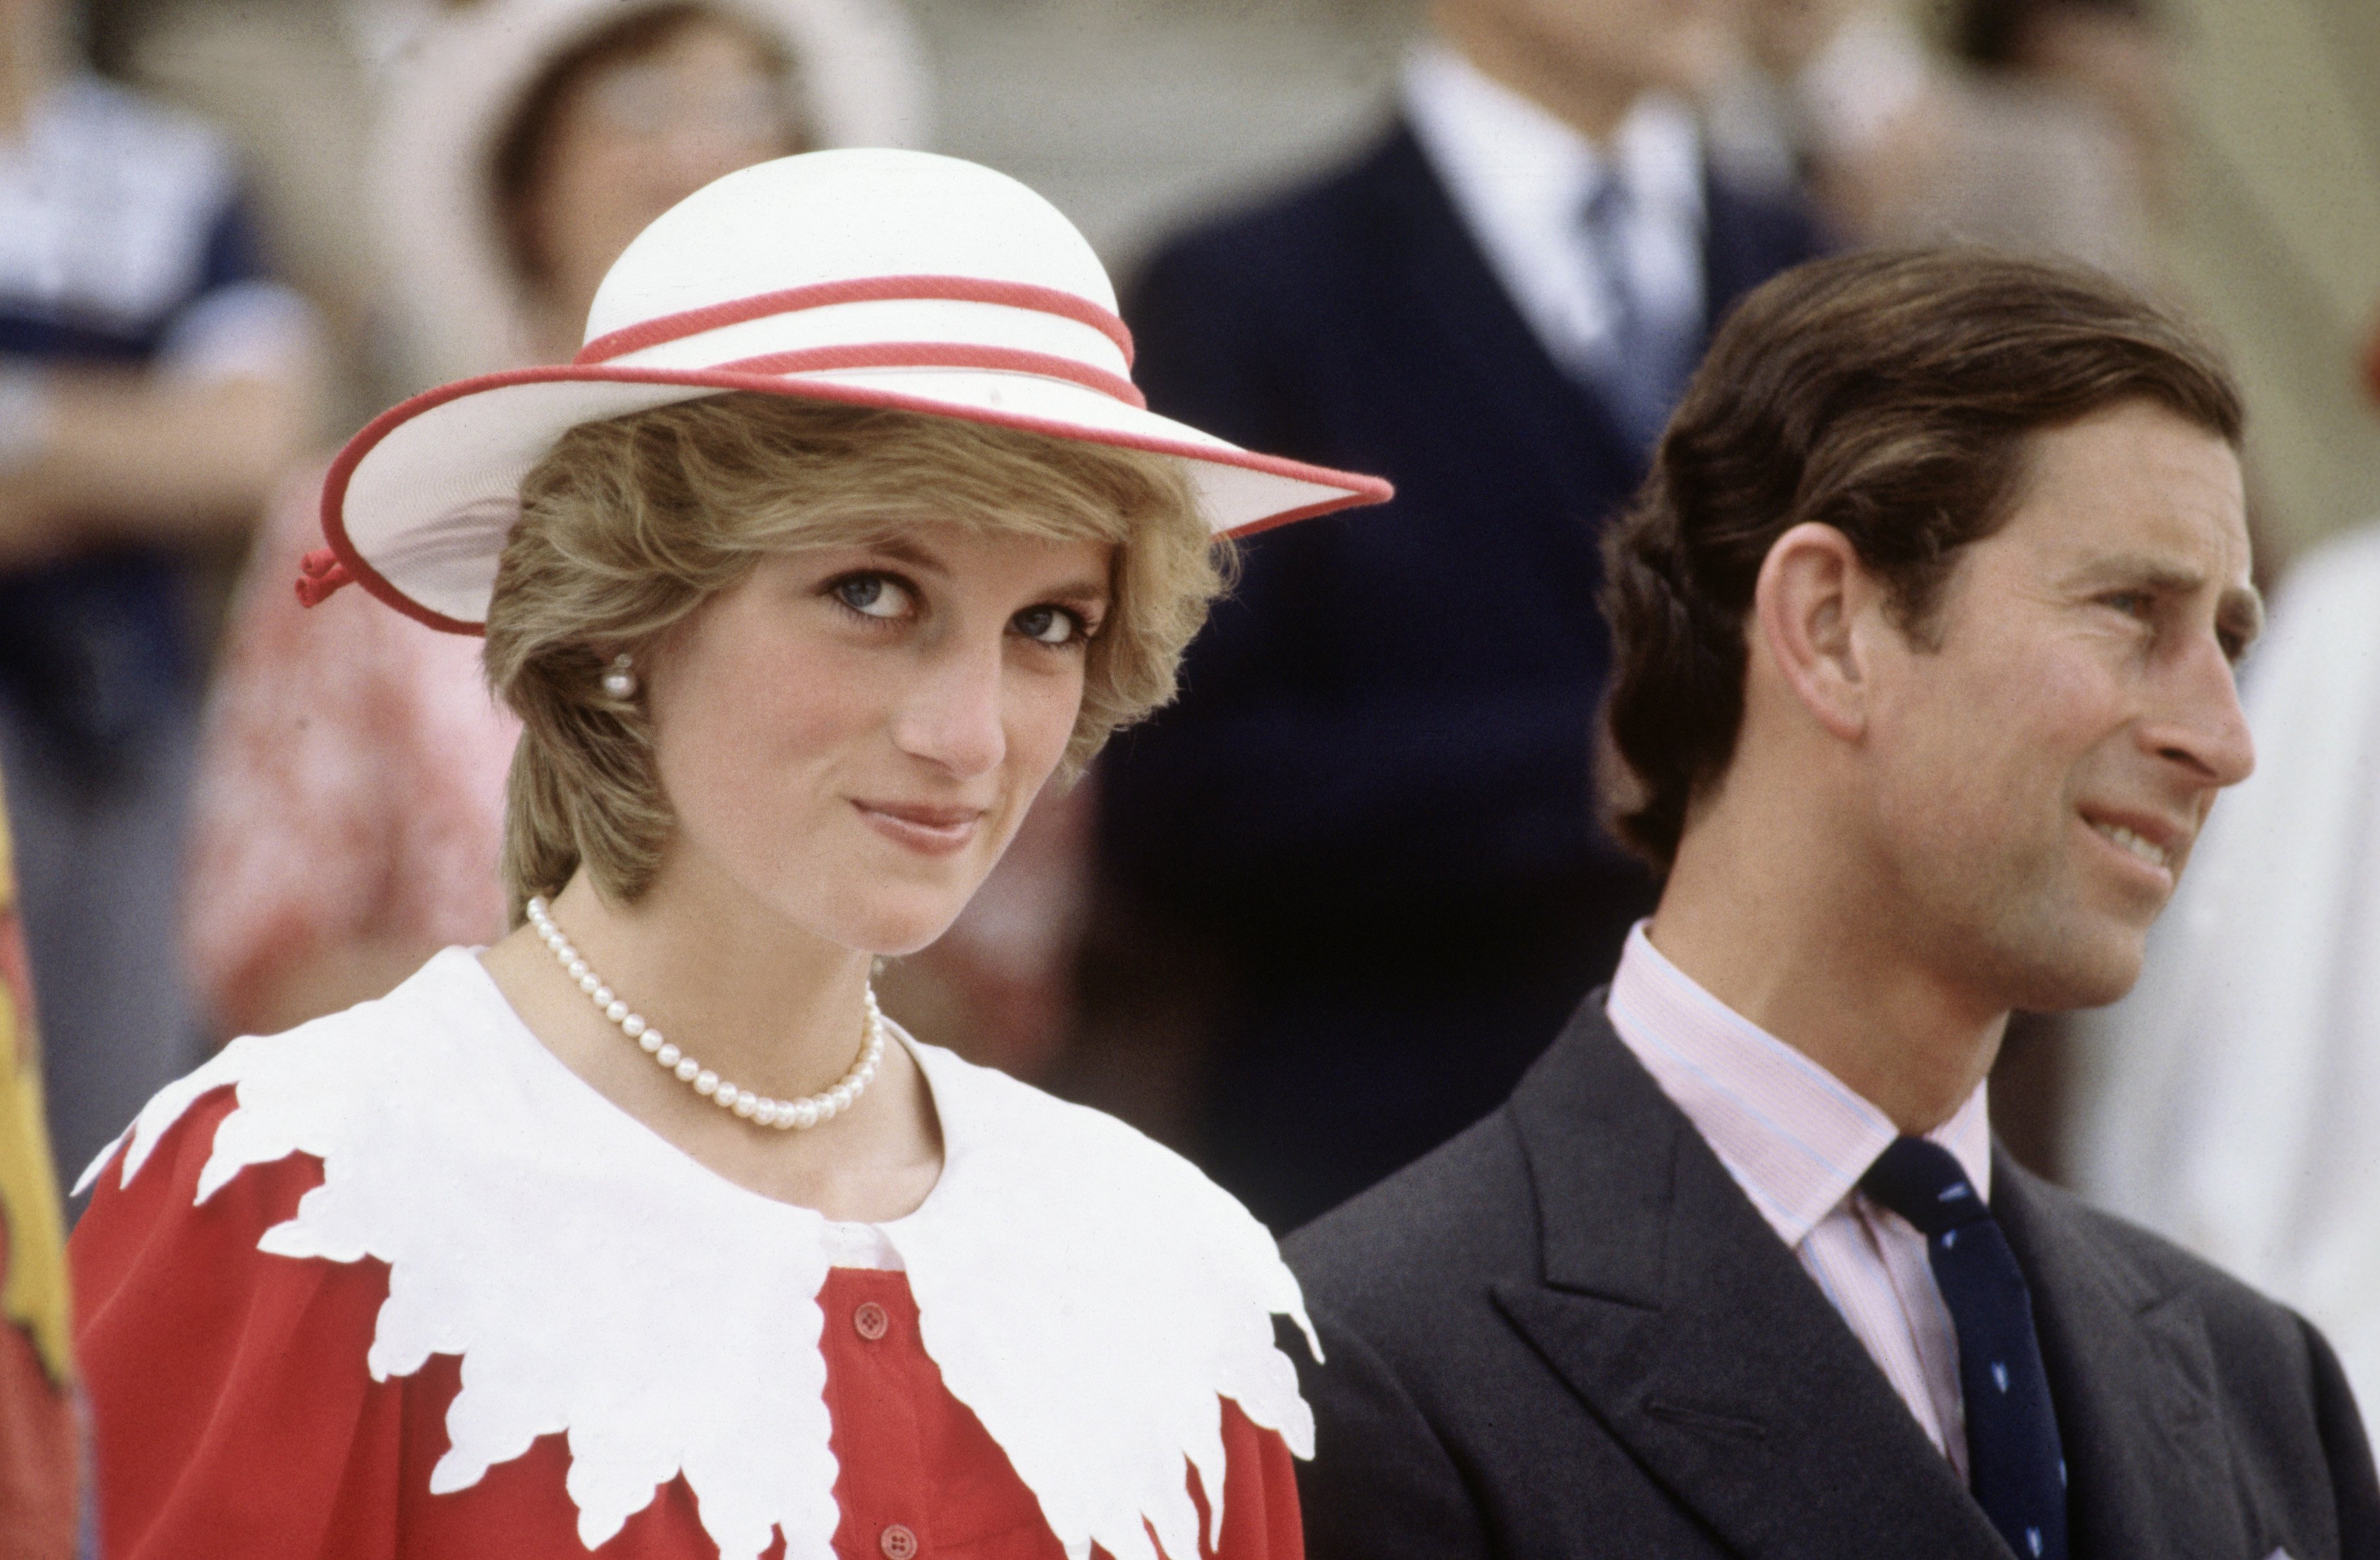 Diana Princesse de Galles et Prince Charles lors de la visite royale du Canada le 29 juin 1983 | Source: Getty Images.